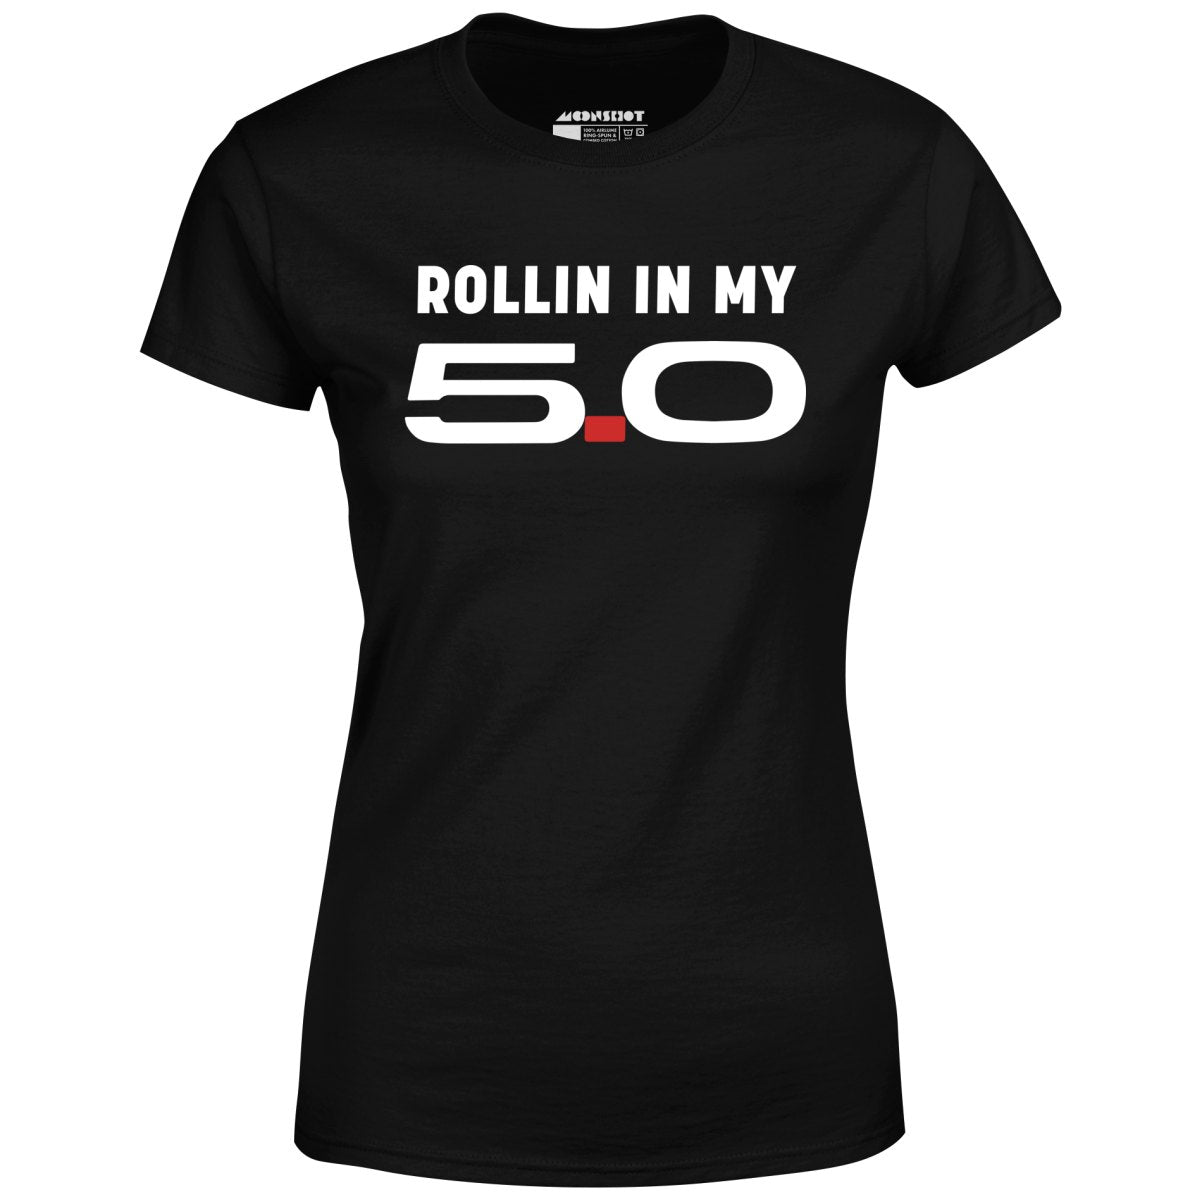 Rollin in my 5.0 - Women's T-Shirt